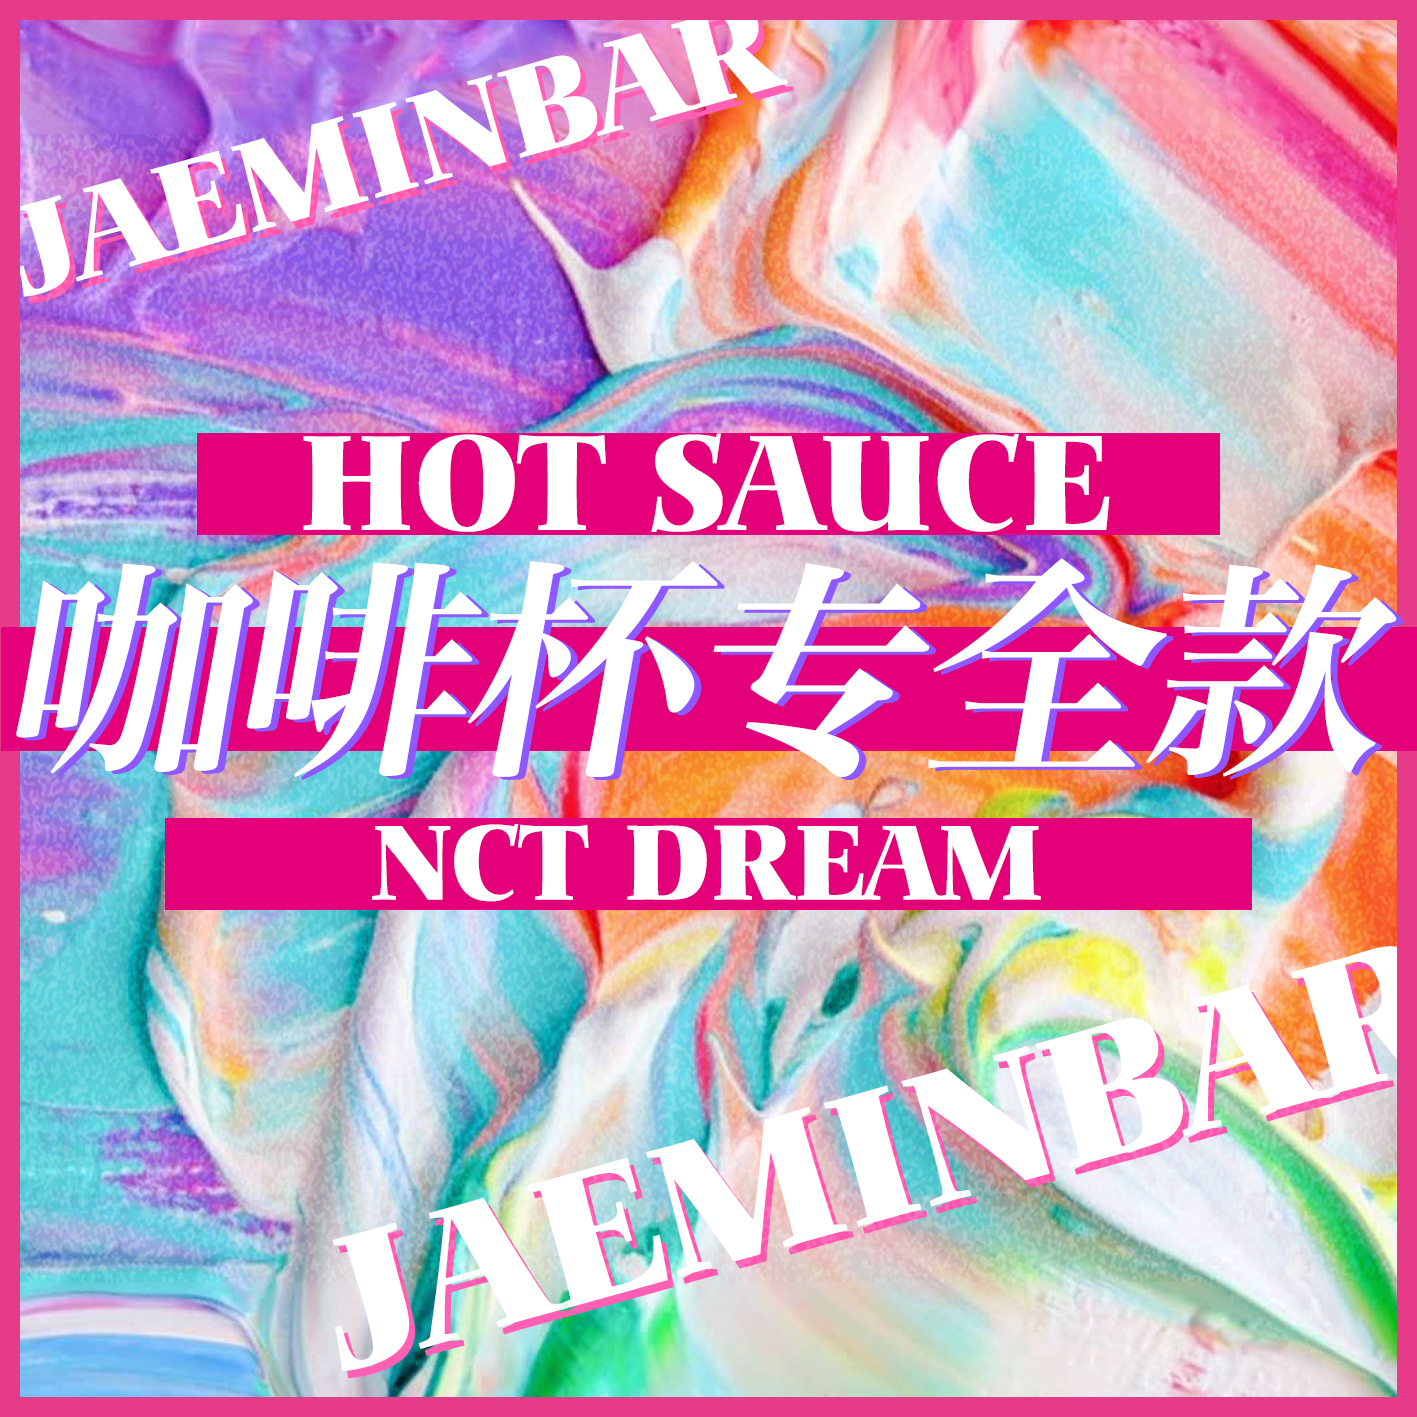 [全款 咖啡杯专运回] NCT DREAM - Album Vol.1 [맛 (Hot Sauce)] (写真集版本) (随机版本) (*购买2张或以上是会提供不同版本)